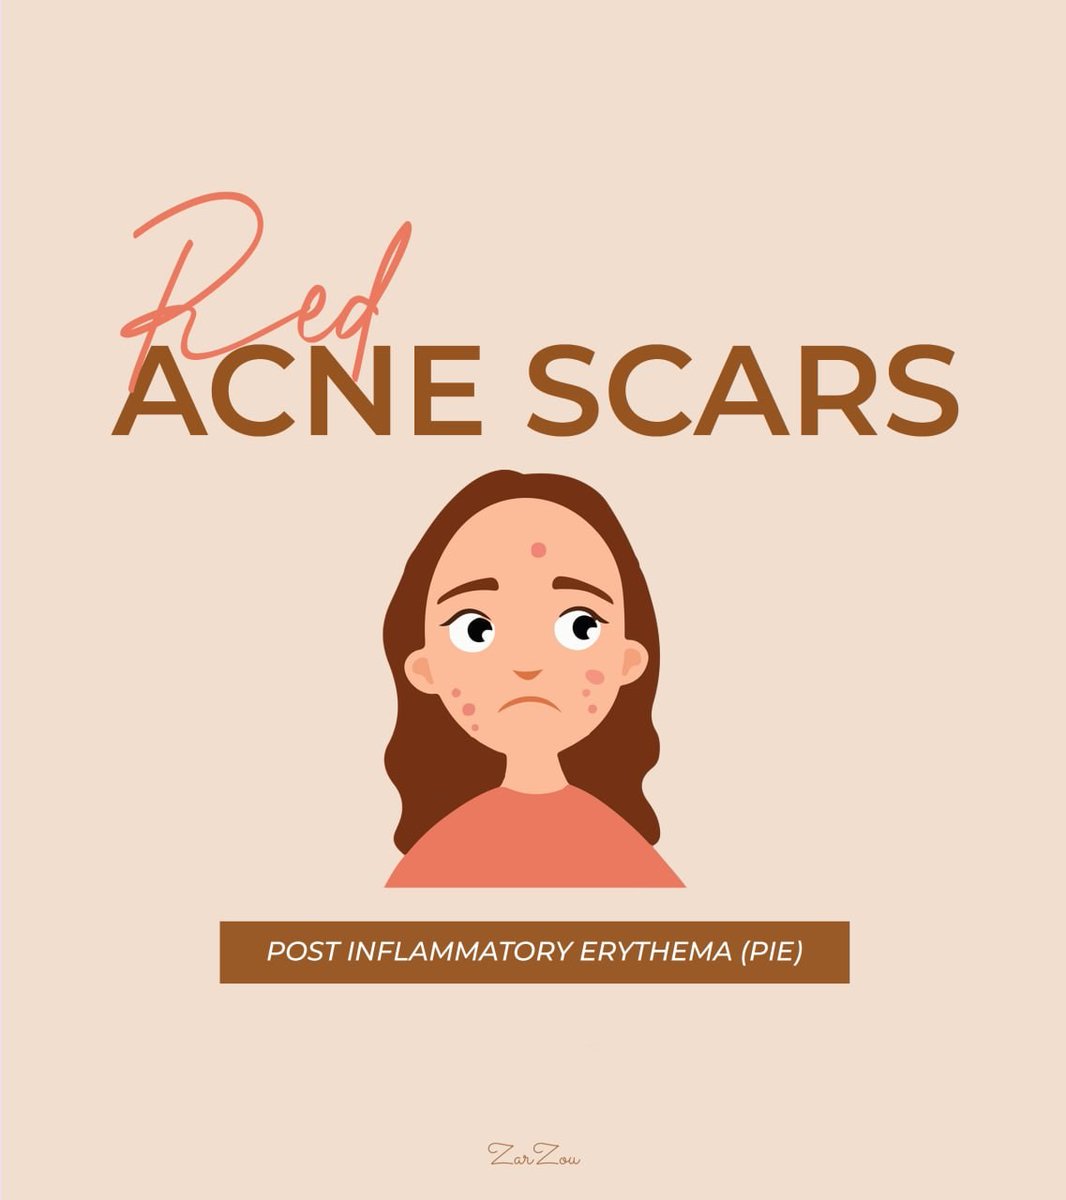 You nak hilangkan acne scars yang warna merah atau nama lain dia Post Inflammatory Erythema (PIE)? Dah macam2 product guna tapi susah sangat nak nampak kesan?Then this thread is for you! 